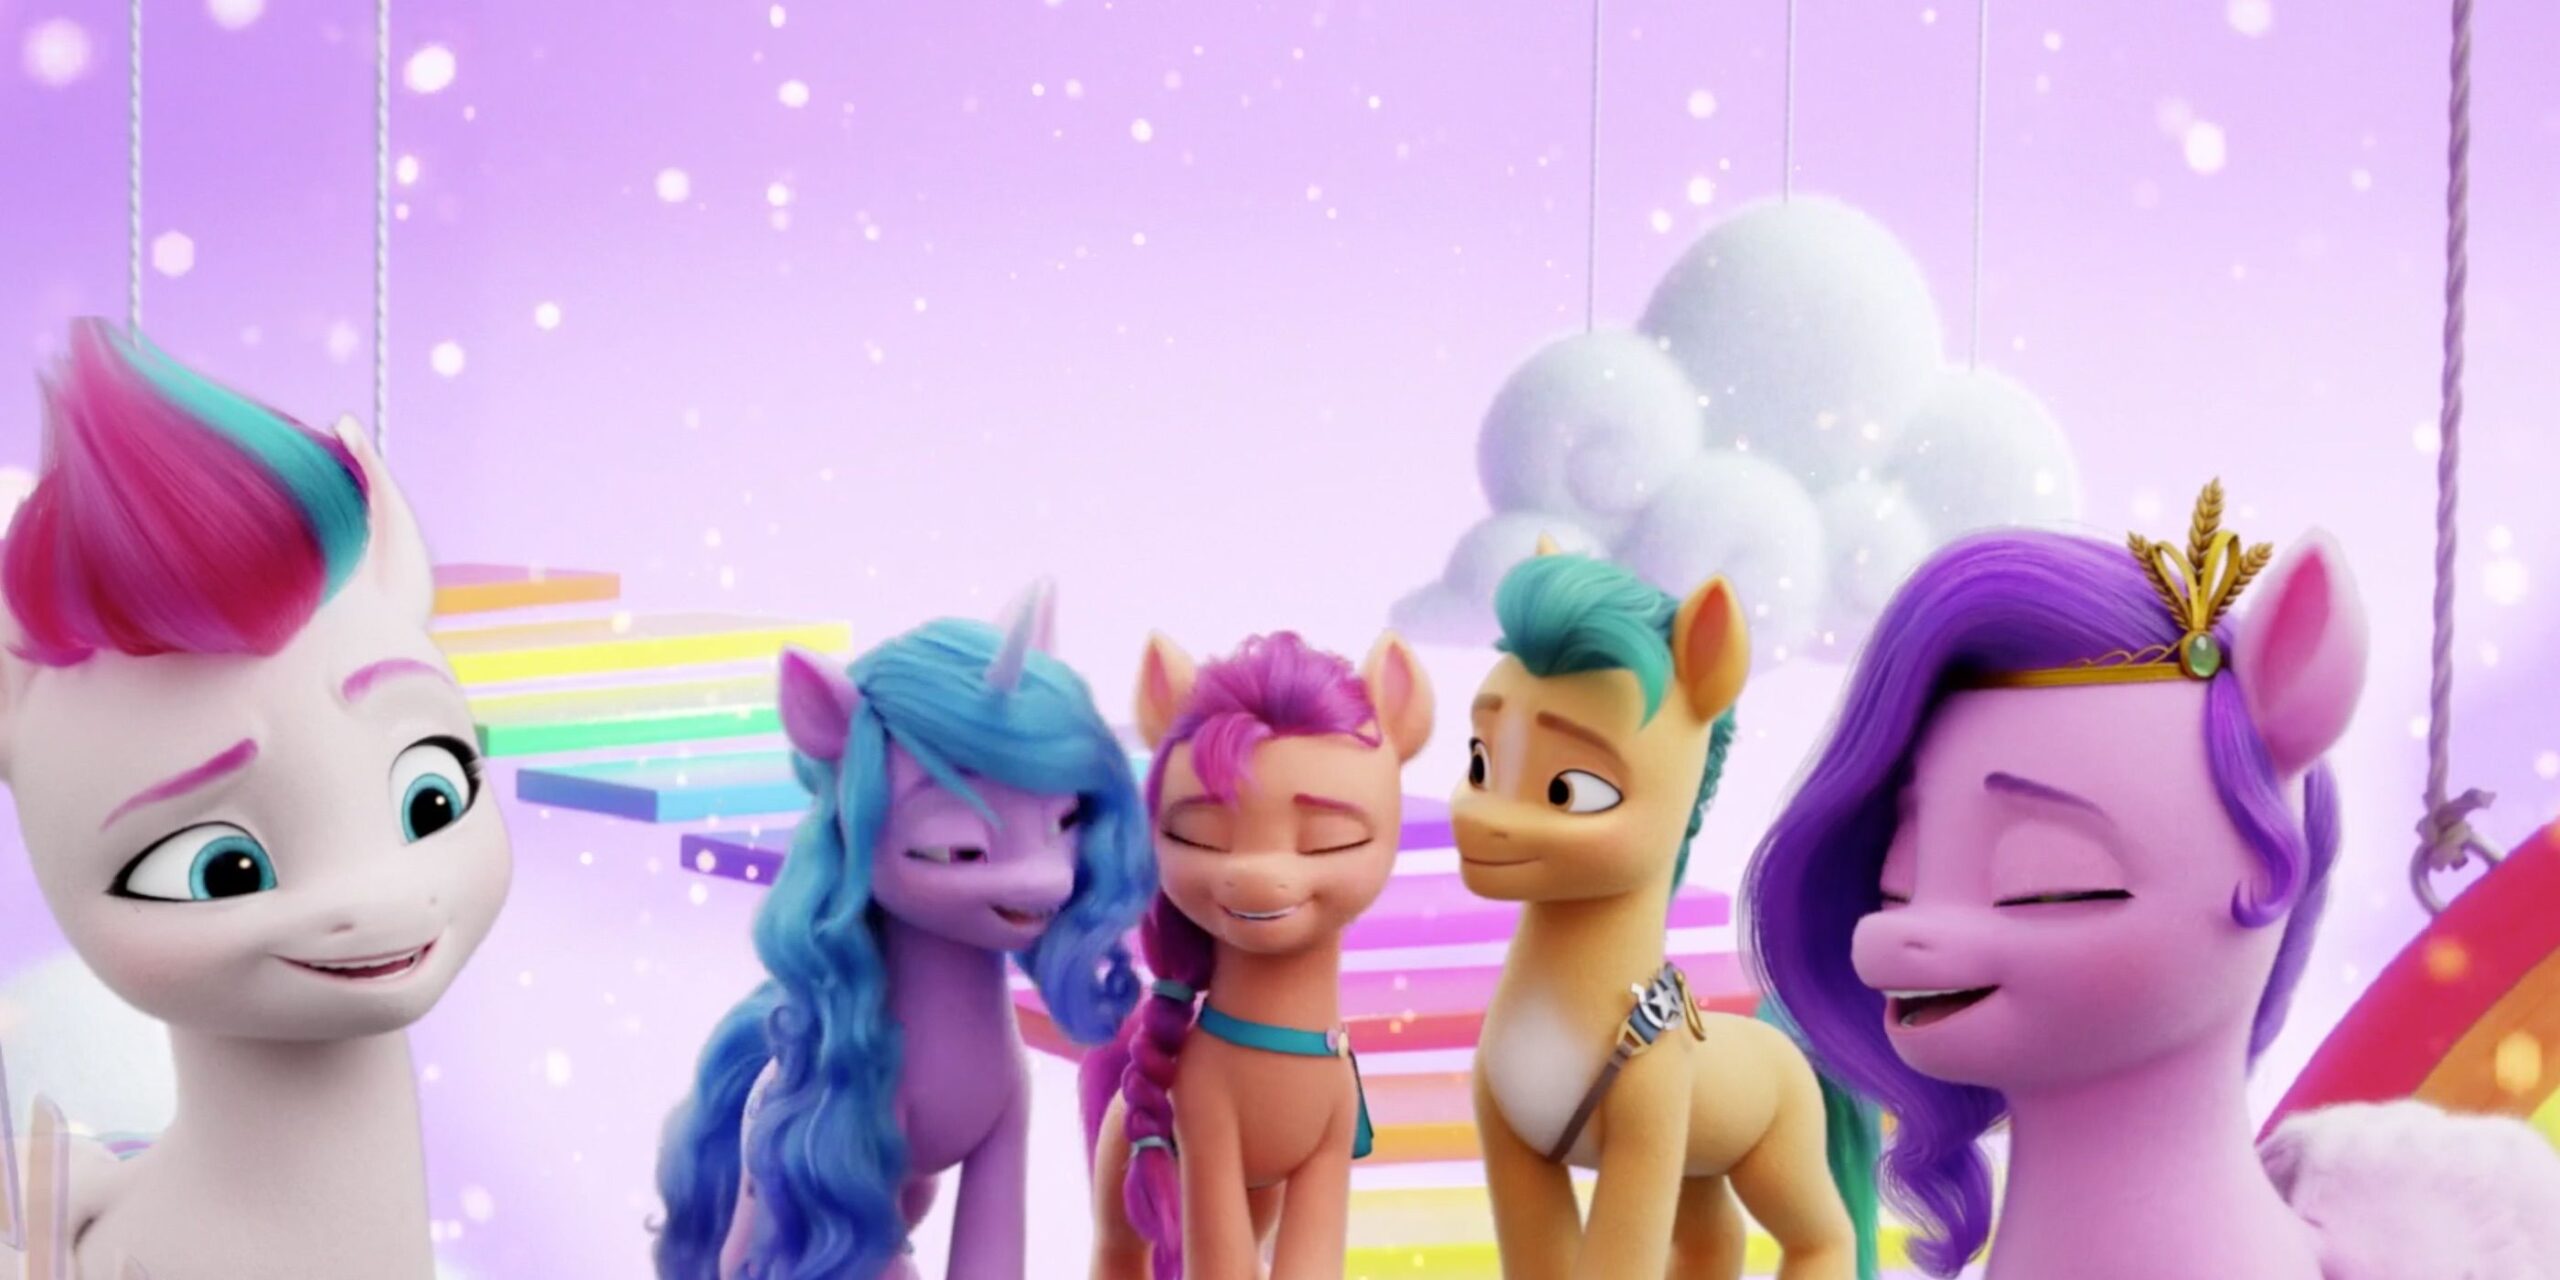  Primeira Mão: My Little Pony estreia este mês na TV  Cultura